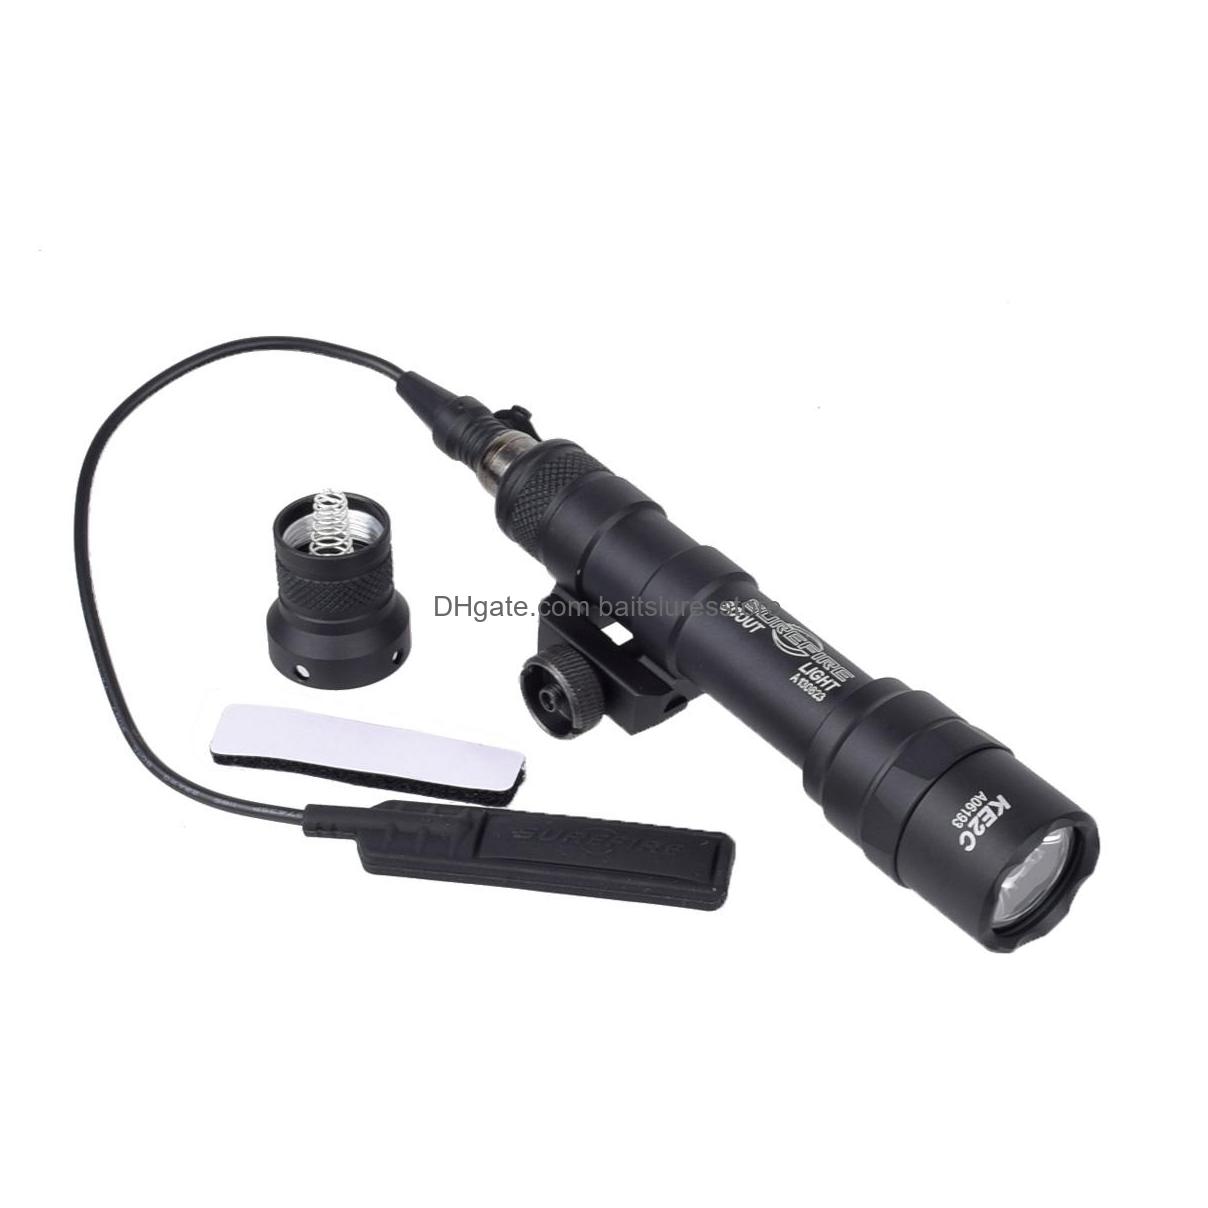 

Gun Lights Tactical Surefir M600 M600B Gun Scout Light Lanterna Flashlight Torch For Pictinny Rail Constant/Momentary Output Drop De Dhheu